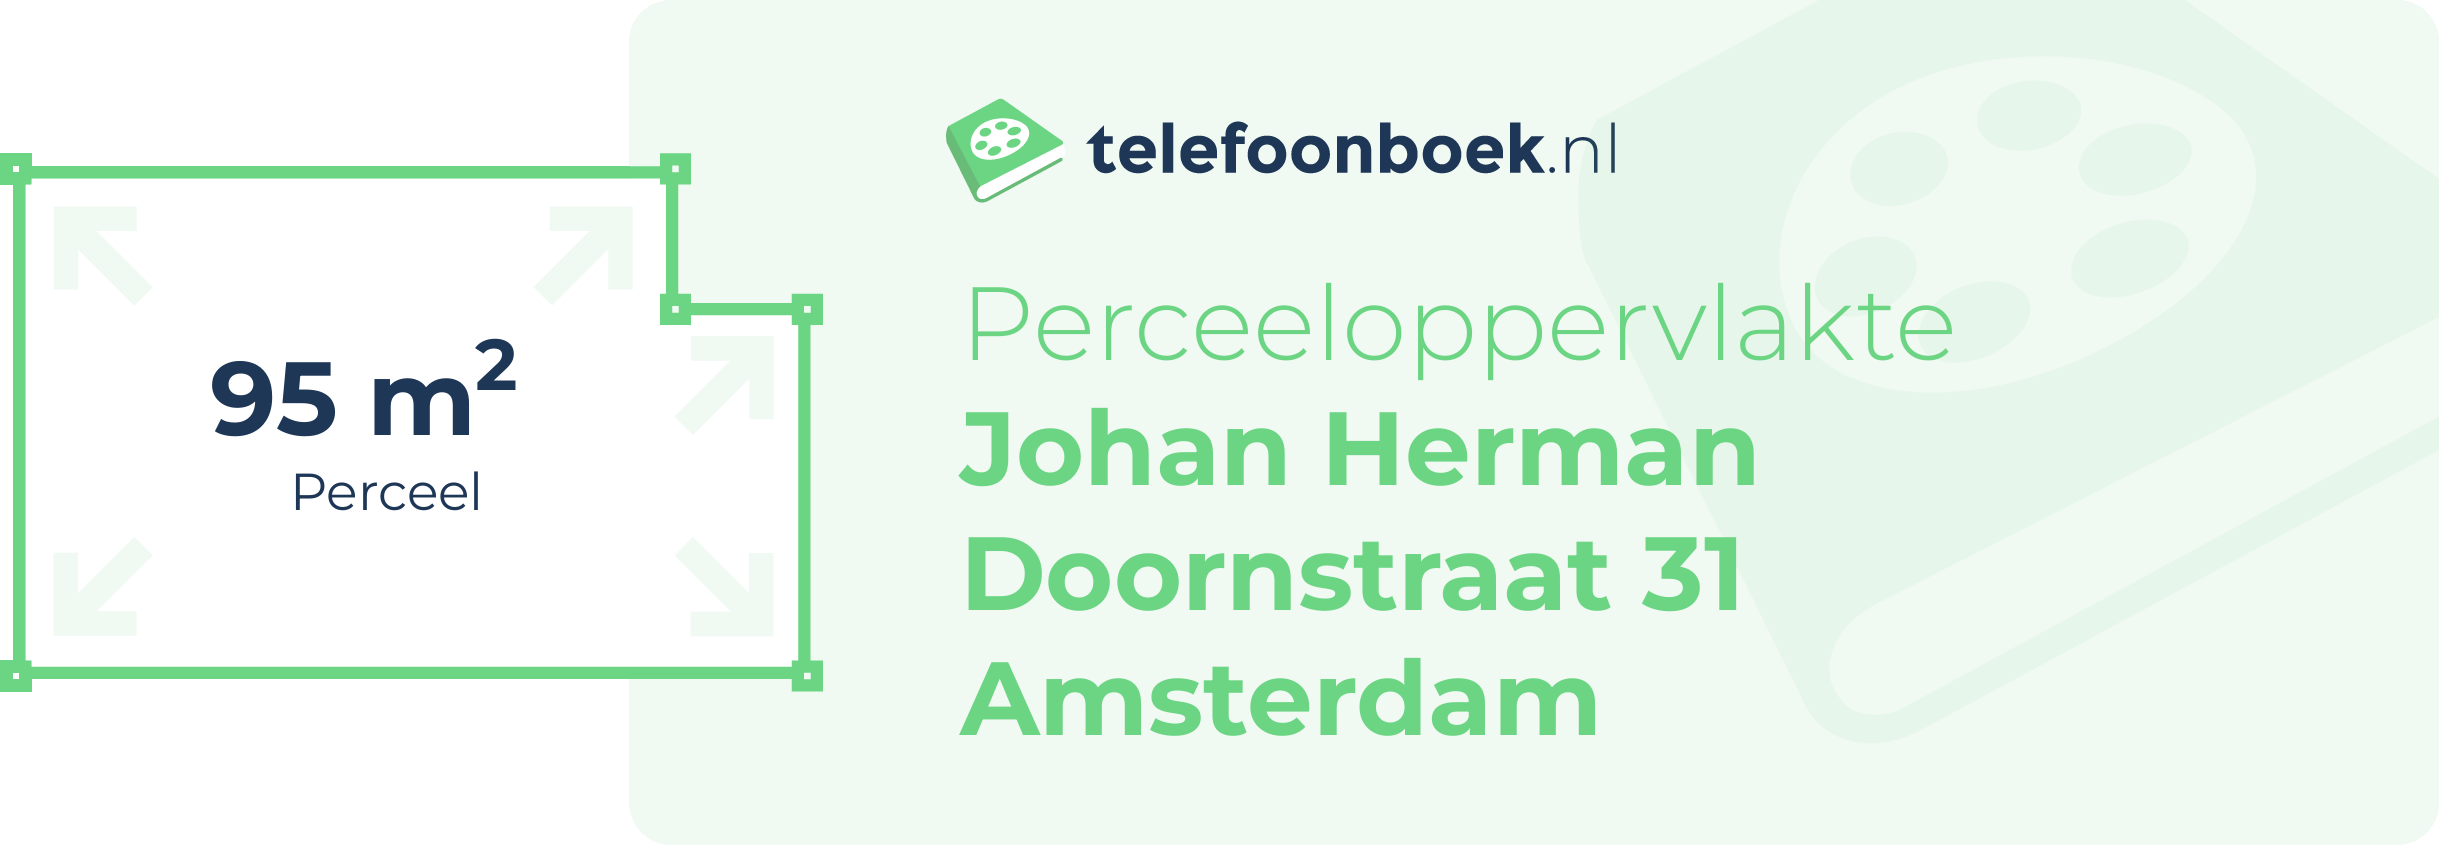 Perceeloppervlakte Johan Herman Doornstraat 31 Amsterdam